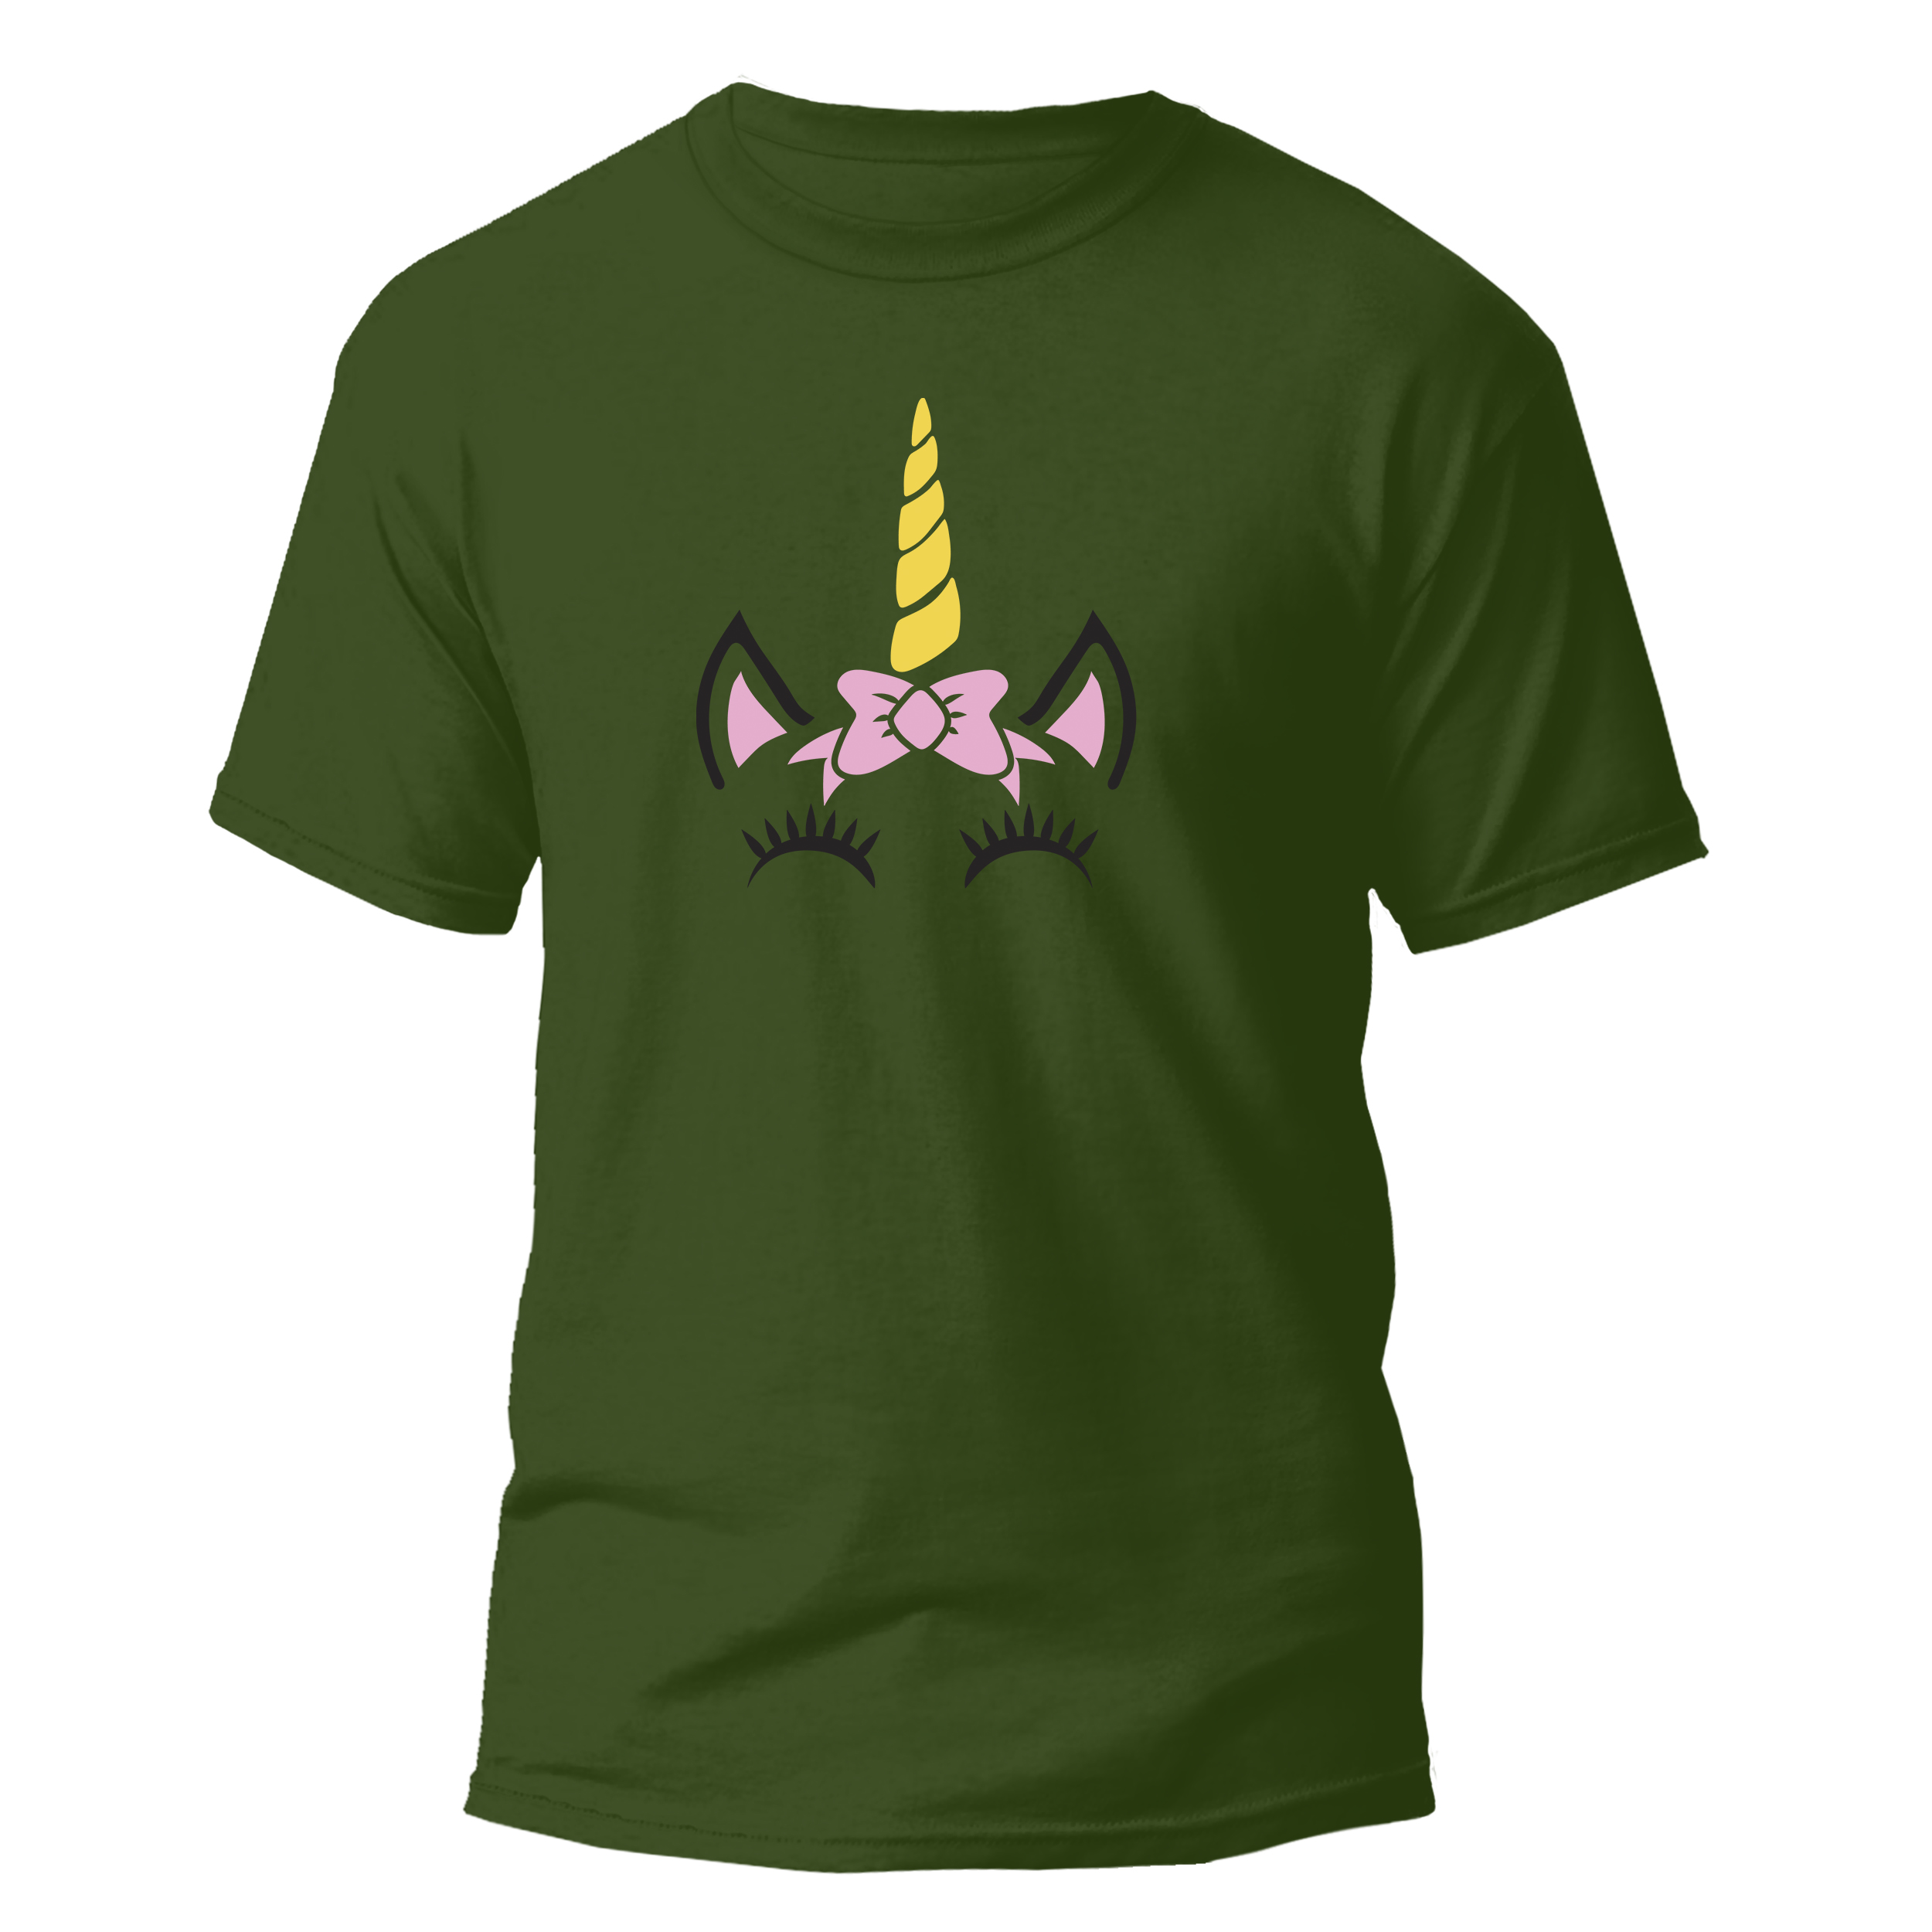 تی شرت آستین کوتاه دخترانه مدل Unicorn کد 026